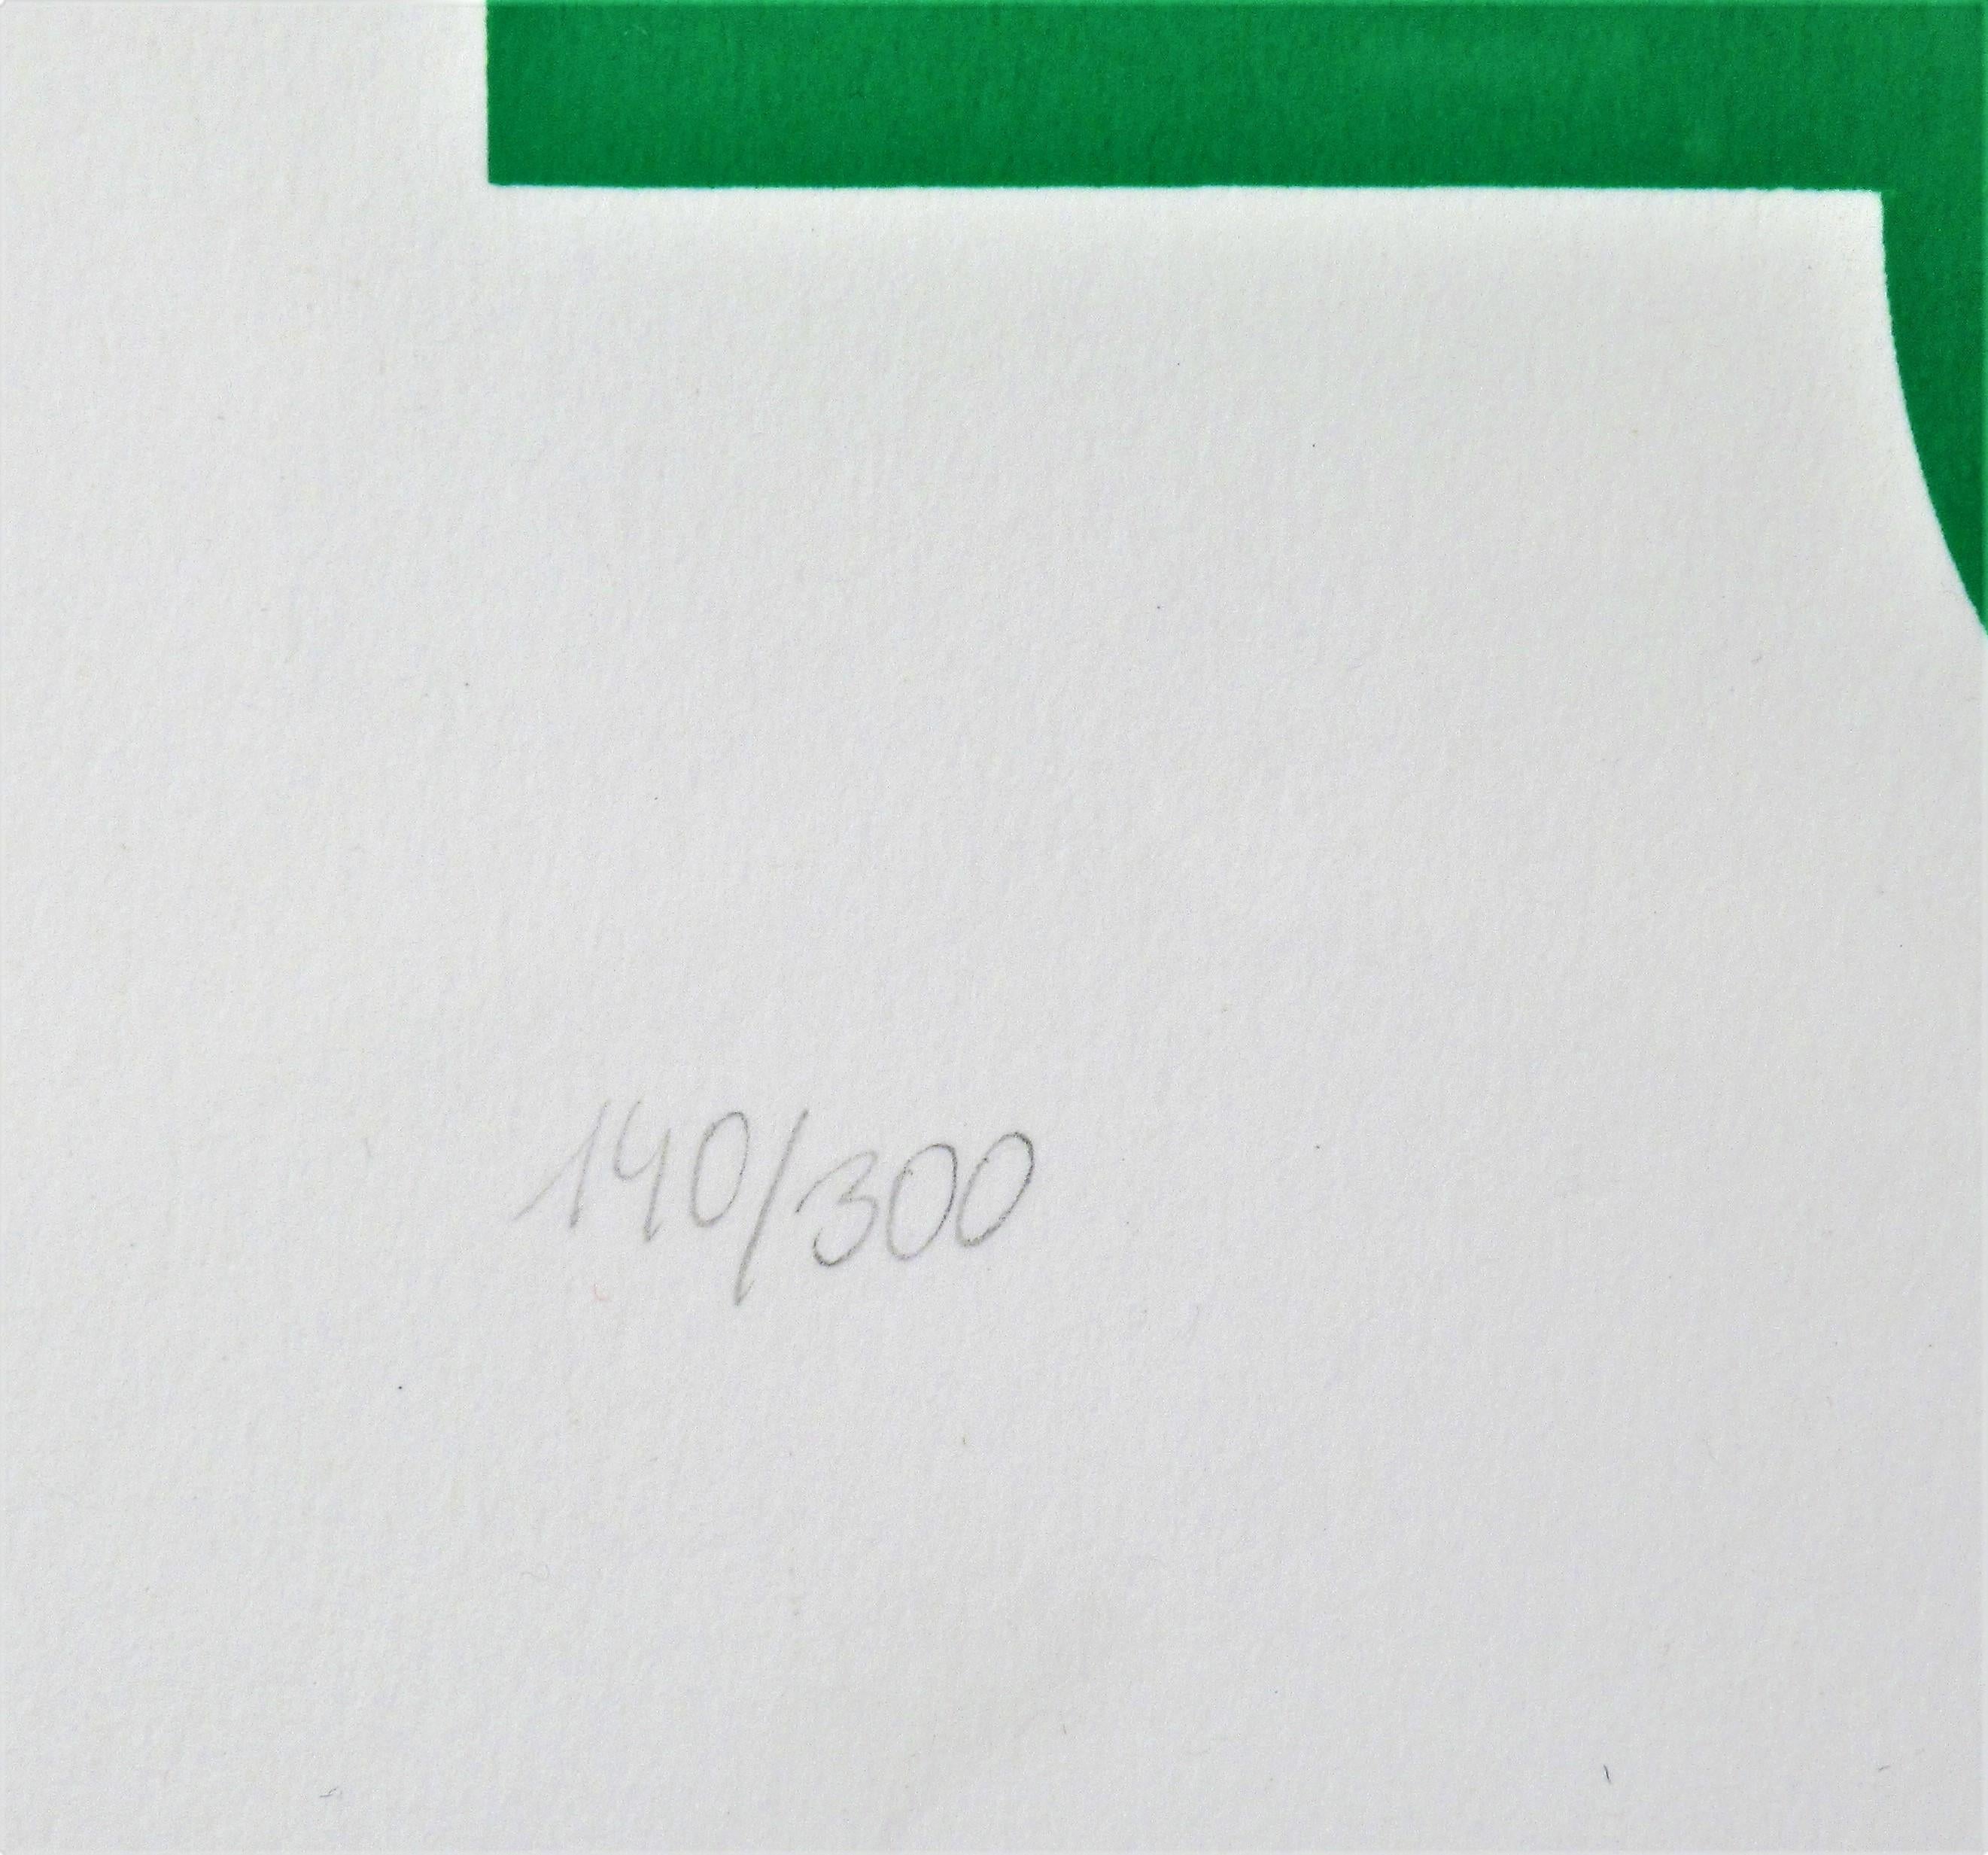 Künstler:	Victor Vasarely, Ungar, 1906-1997
Titel:	Procion
Jahr:	1968
Medium:	Farbserigrafie
Auflage:	Mit Bleistift nummeriert 140/300 
Papier:	Woven
Bildgröße: 22,25 x 22,25 Zoll
Gerahmte Größe:  36 x 35 Zoll
Unterschrift:  Handsigniert mit